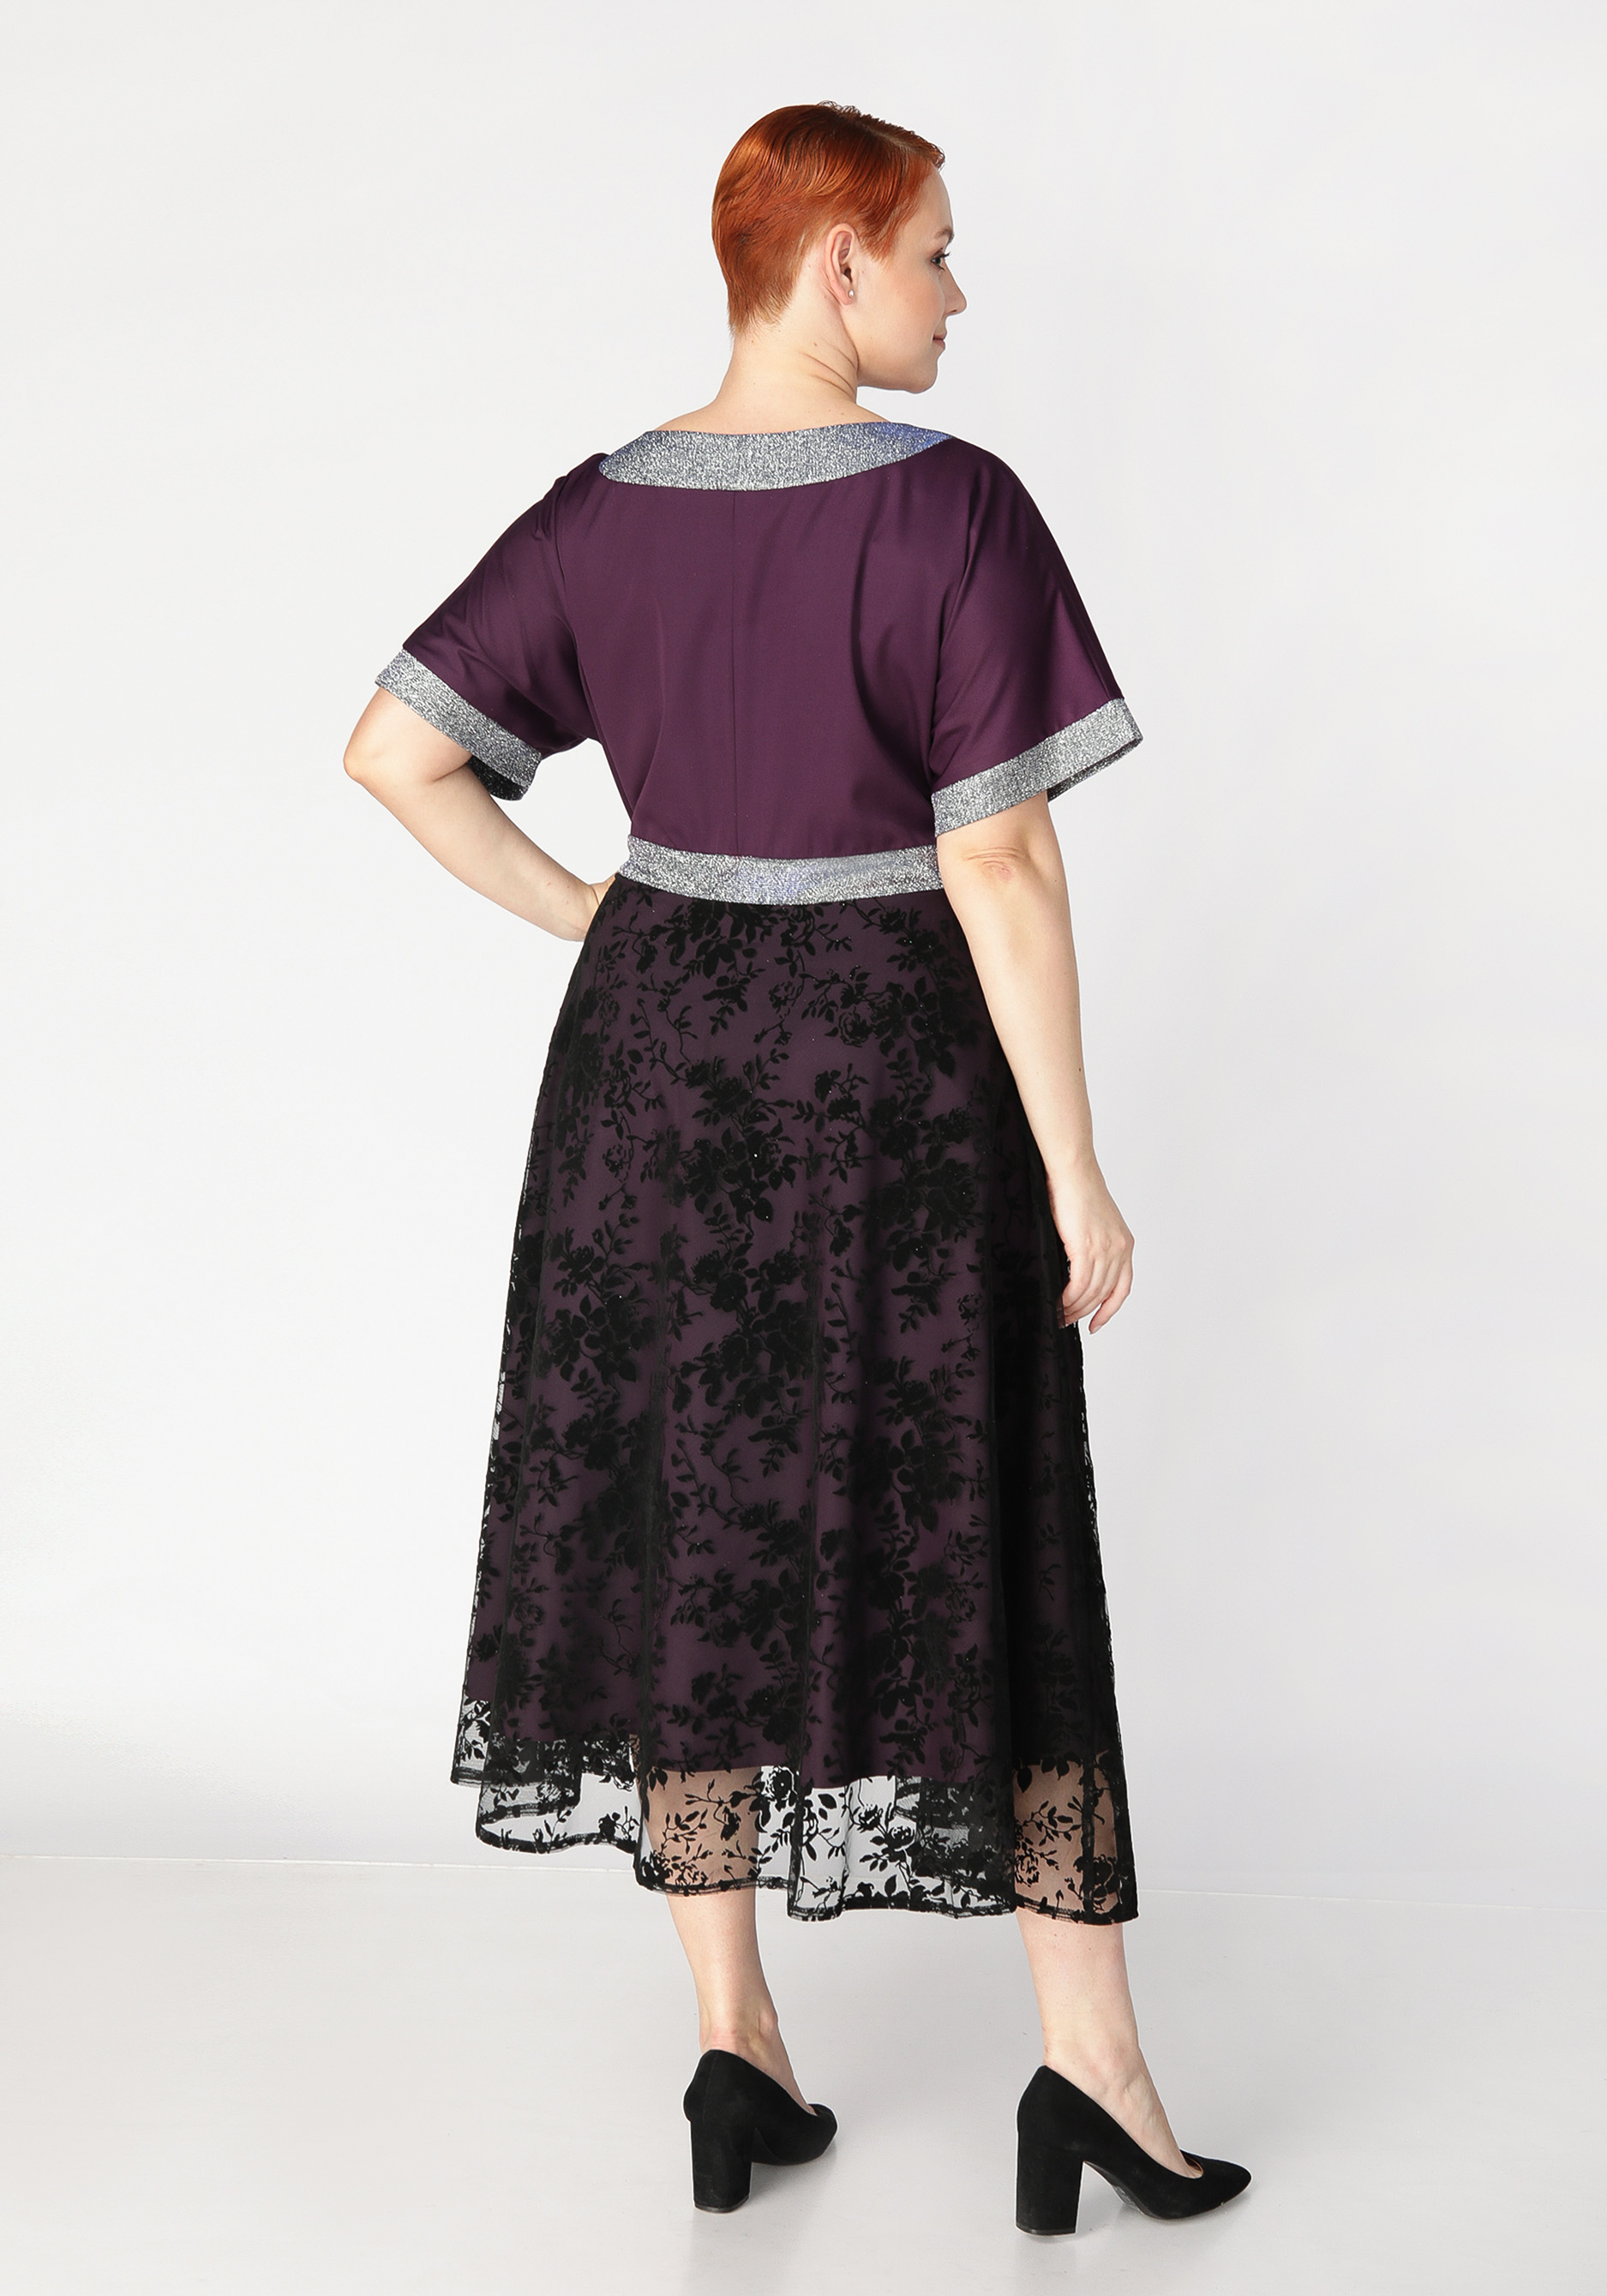 Платье с объемным принтом Mio Imperatrice, цвет баклажановый, размер 54 - фото 4